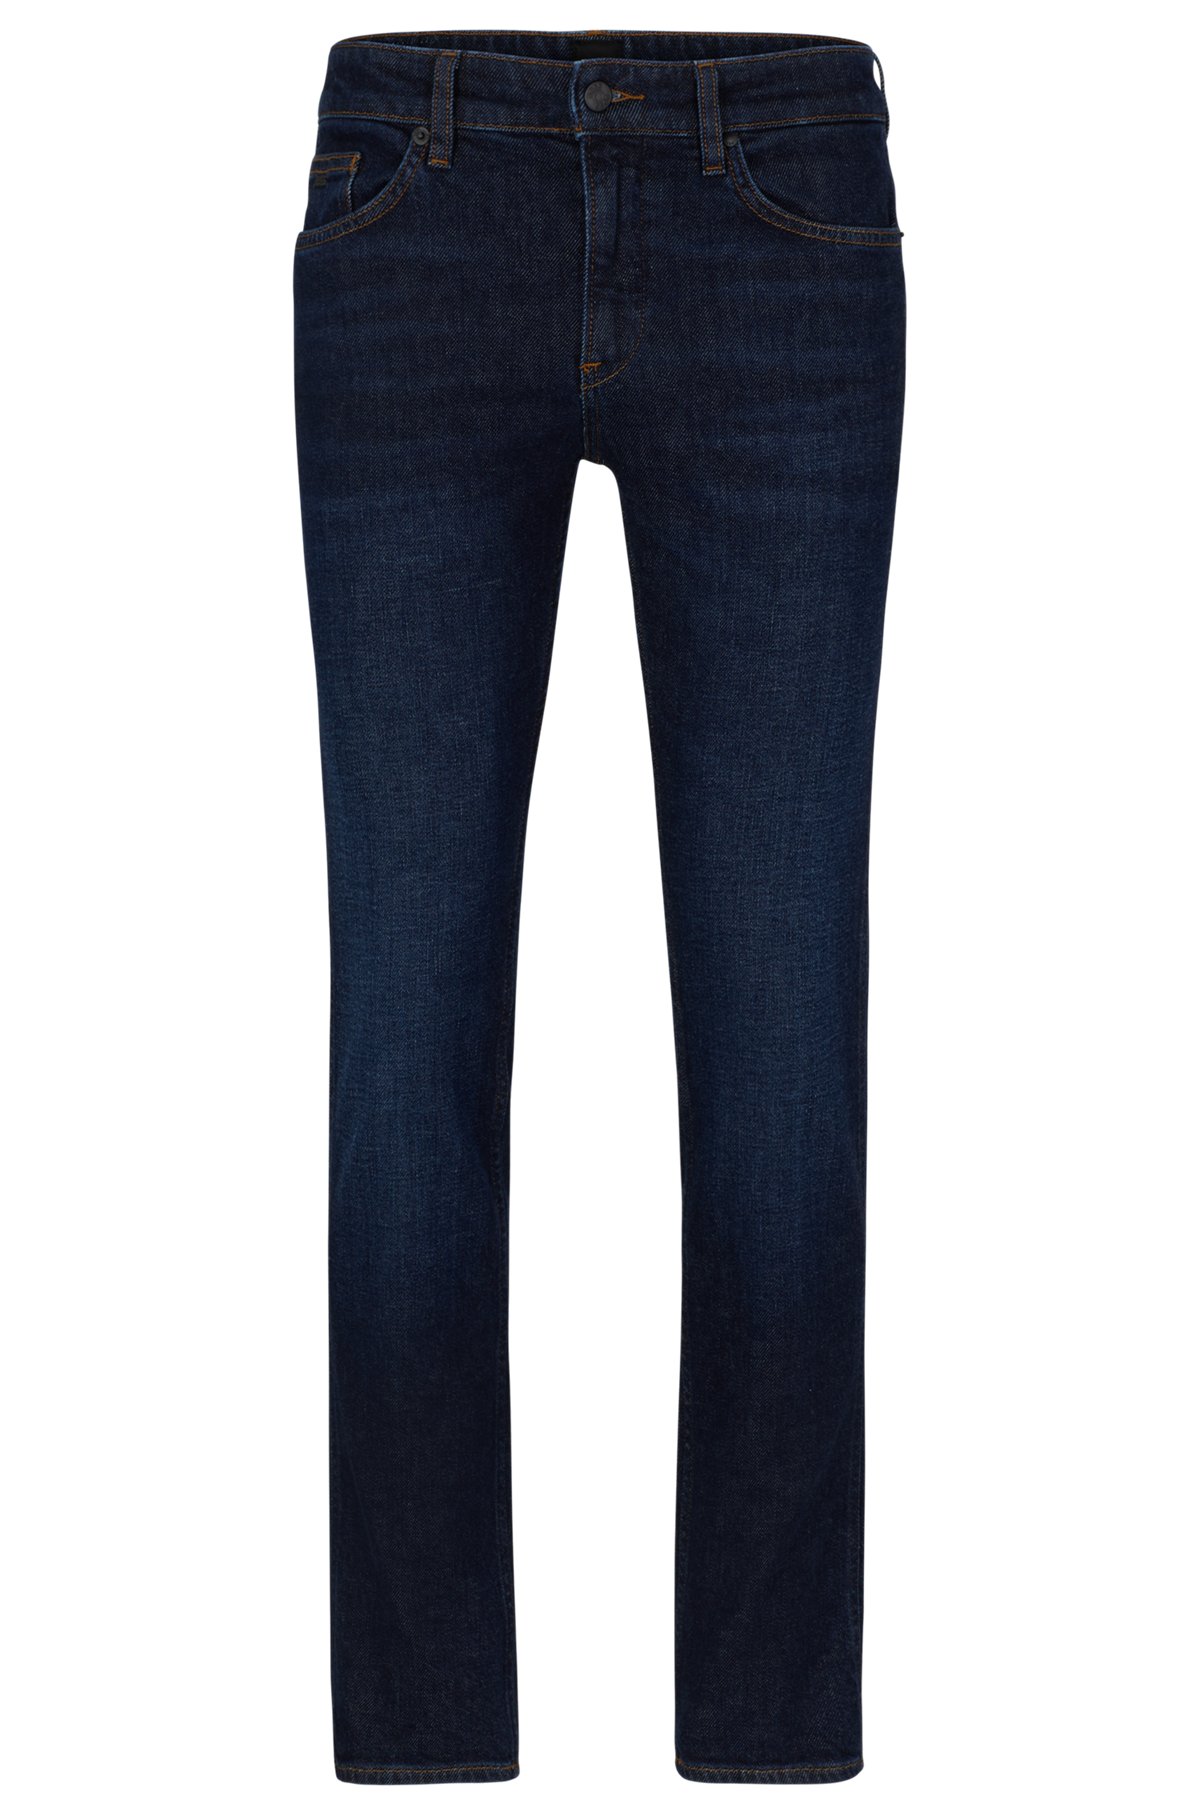 Slim-fit jeans in dark-blue comfort-stretch denim, Blue